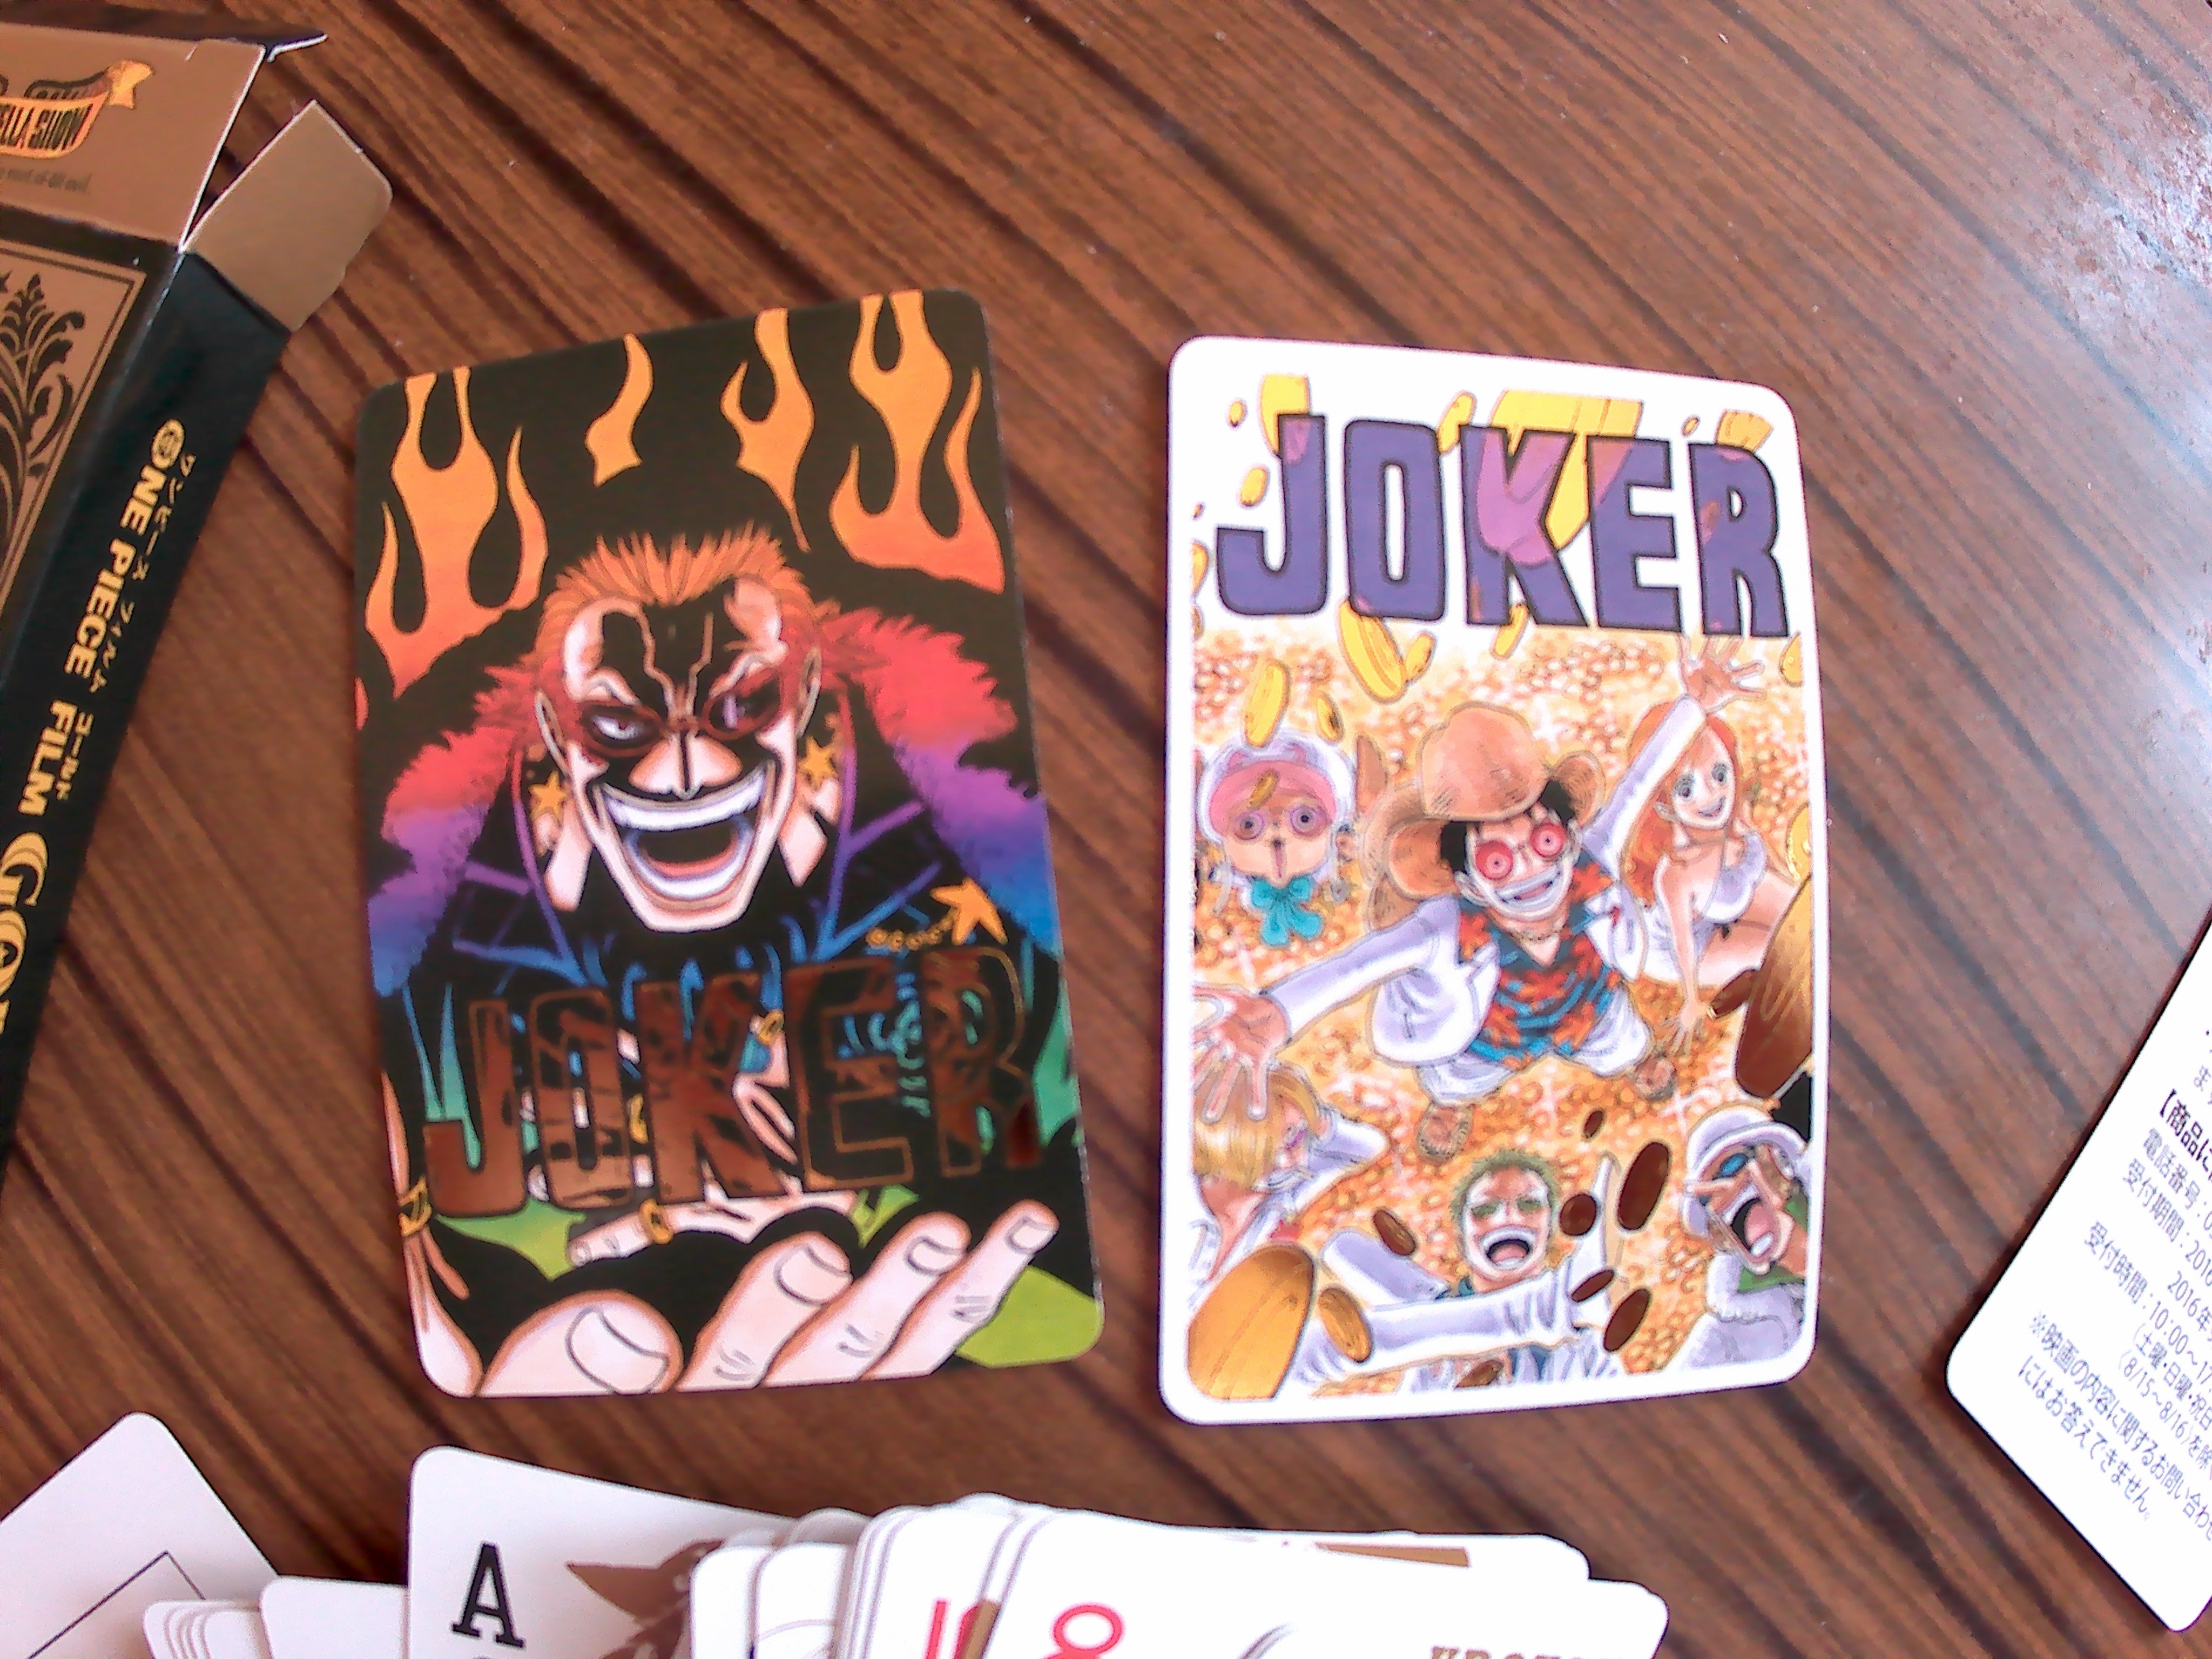 Baker ベイカー One Piece Fan Des Cartes A Jouer Du Film Gold Avec 2 Cartes Joker Dessine Par Notre Mangaka Et Le Op Mag Vol 9 Enfin Je L Ai